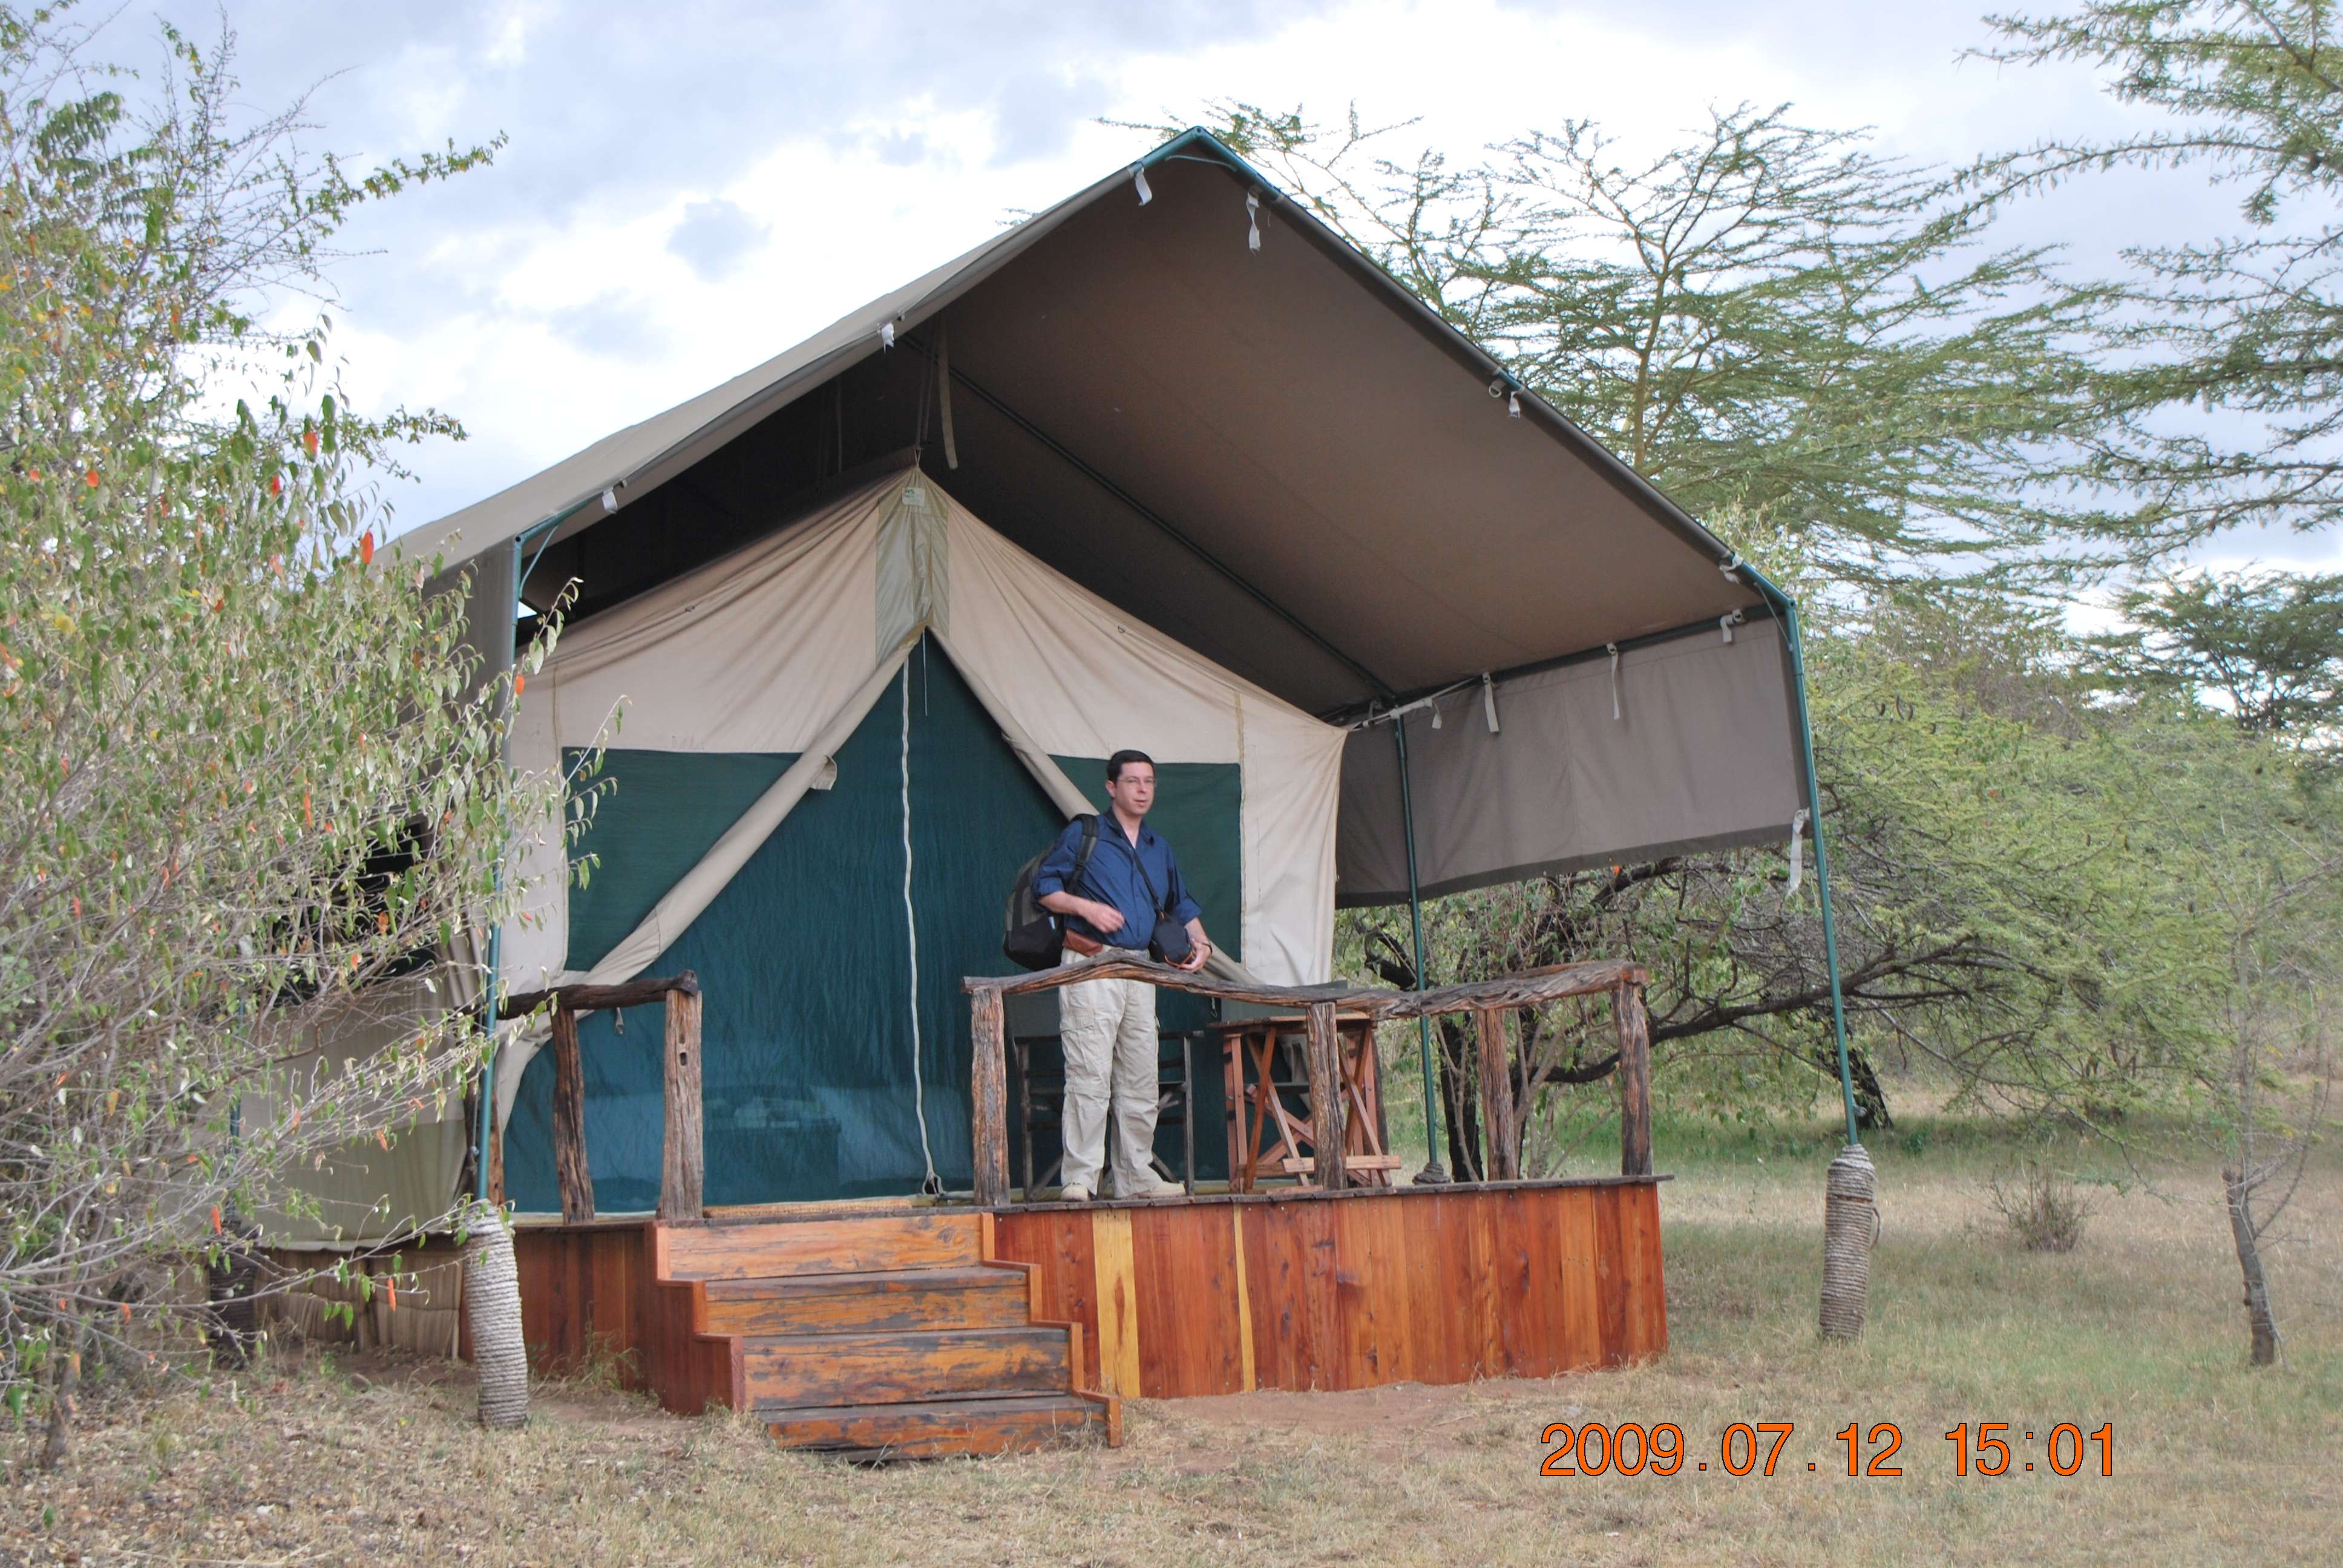 Kenia una experiencia inolvidable - Blogs de Kenia - Preparativos y viajes (1)